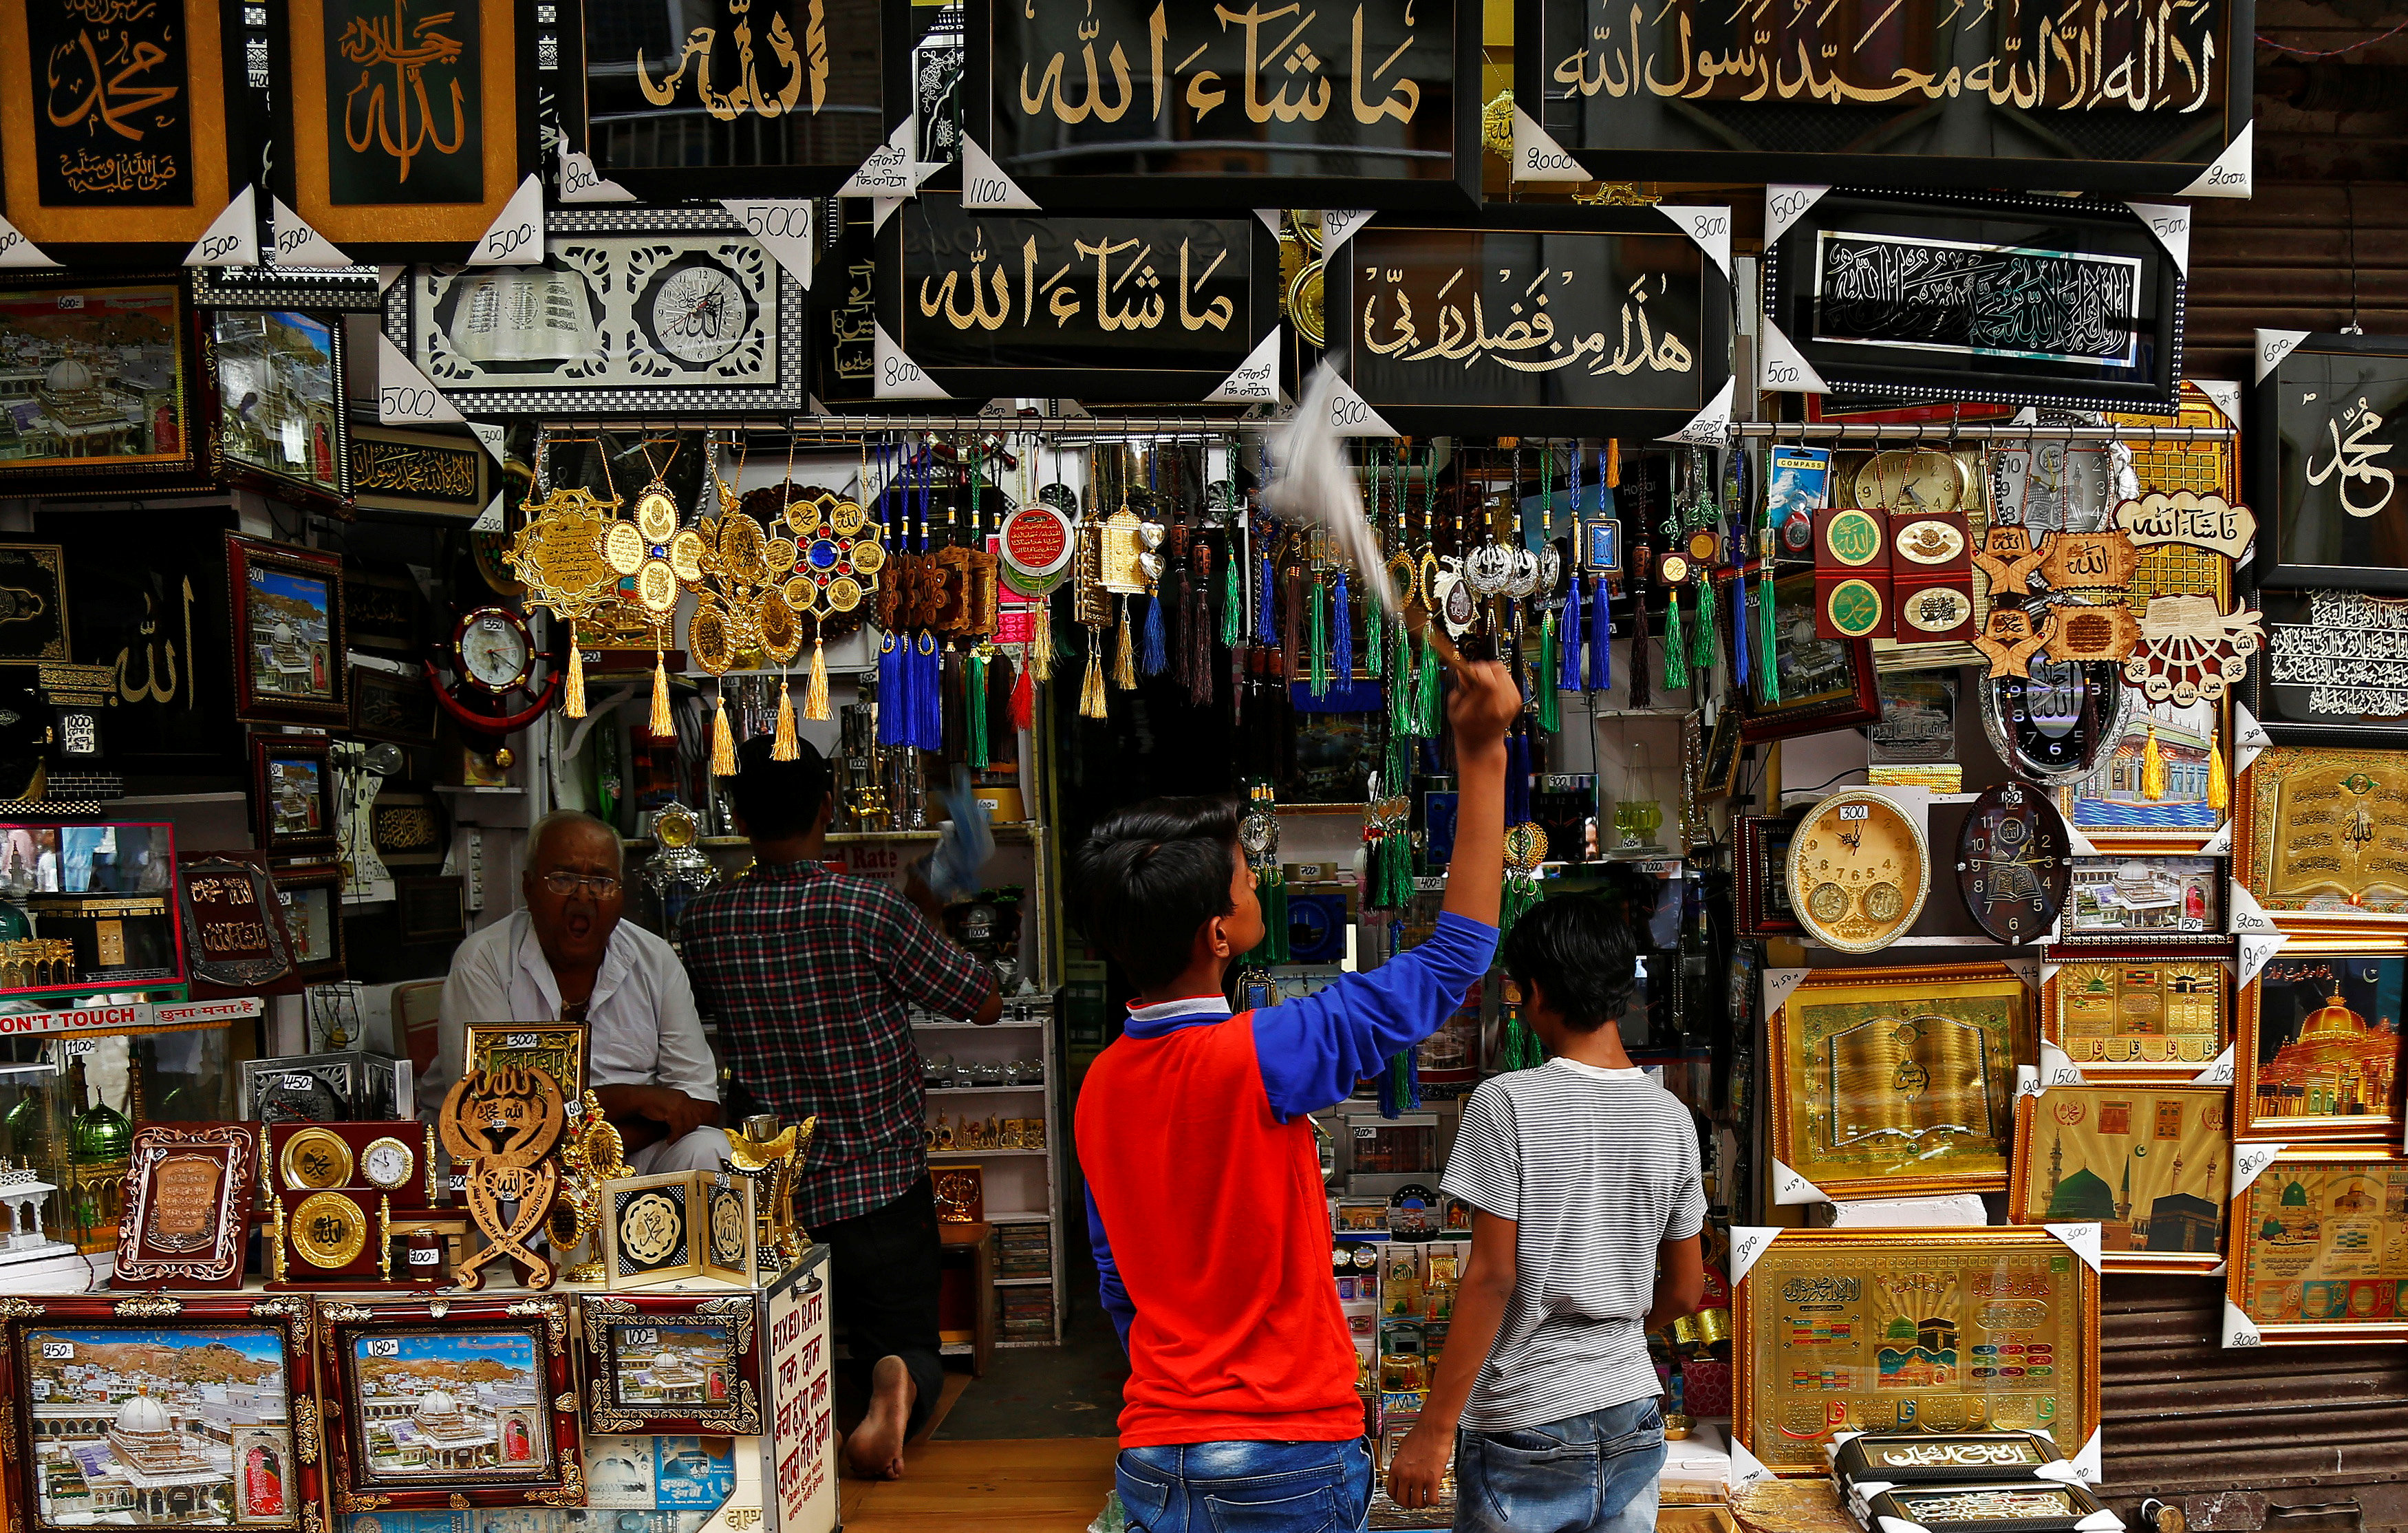 صبي ينظف الصور الدينية للبيع في متجر بأجمير فى الهند